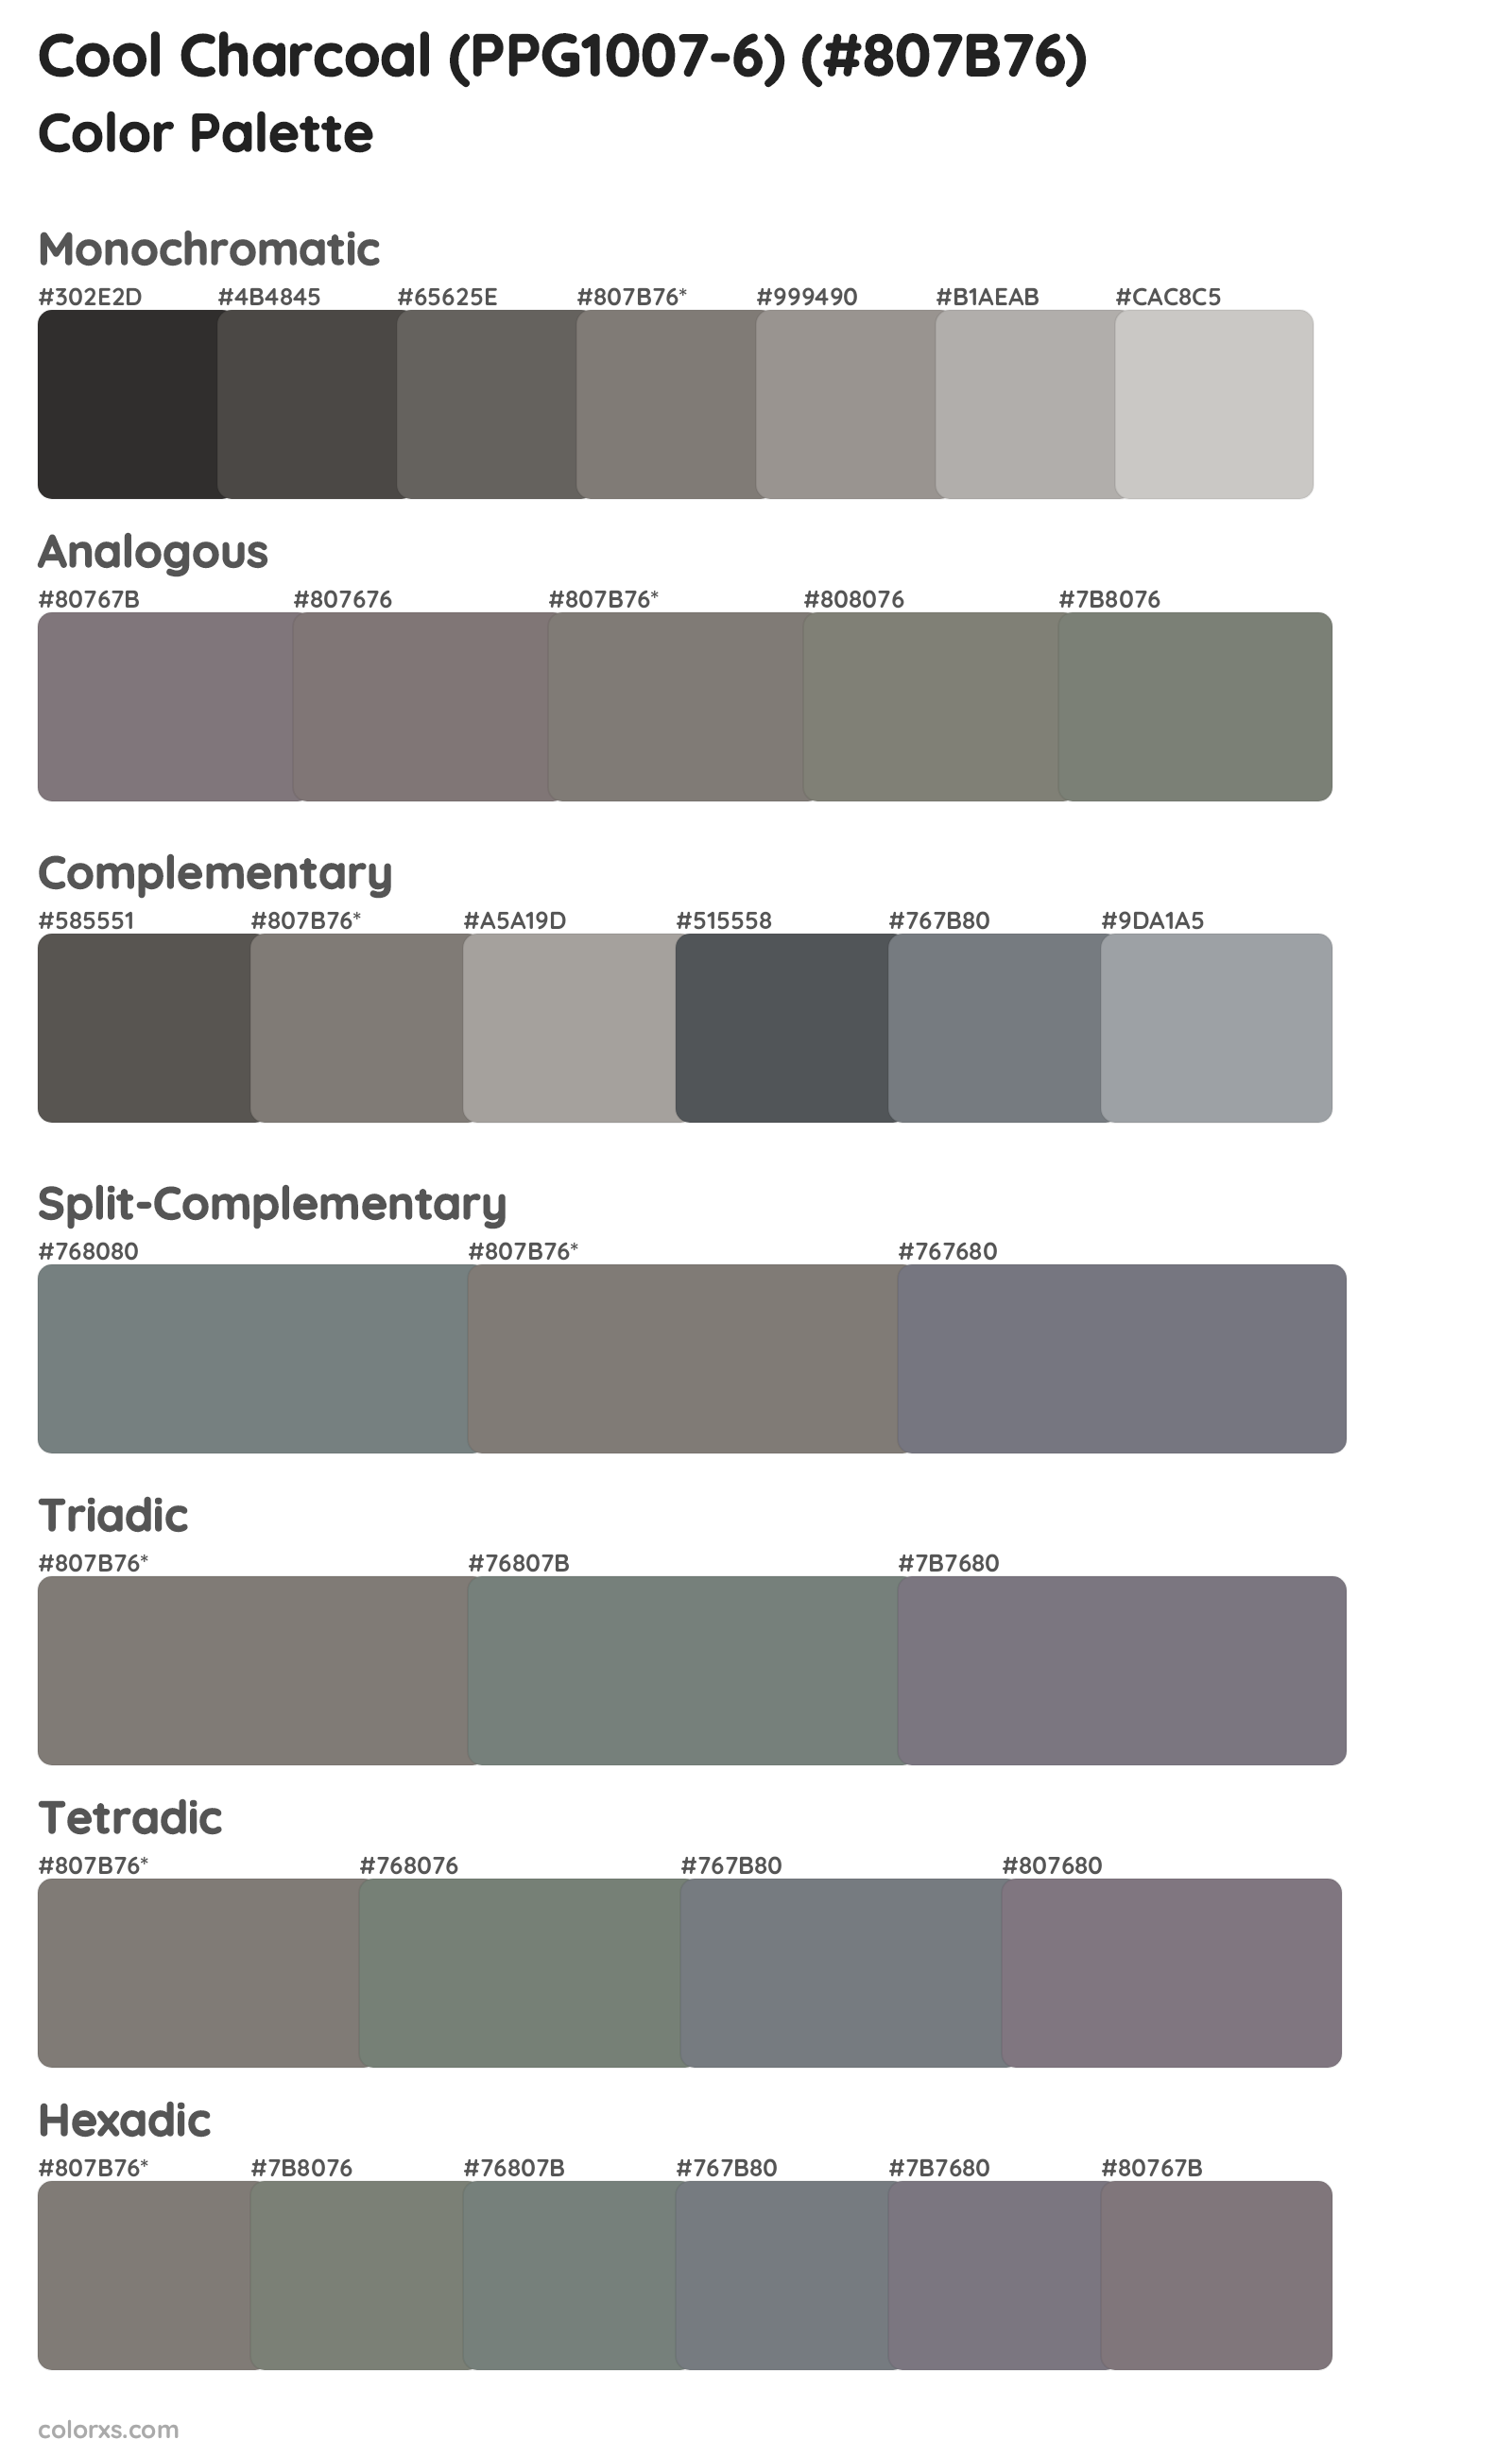 Cool Charcoal (PPG1007-6) Color Scheme Palettes